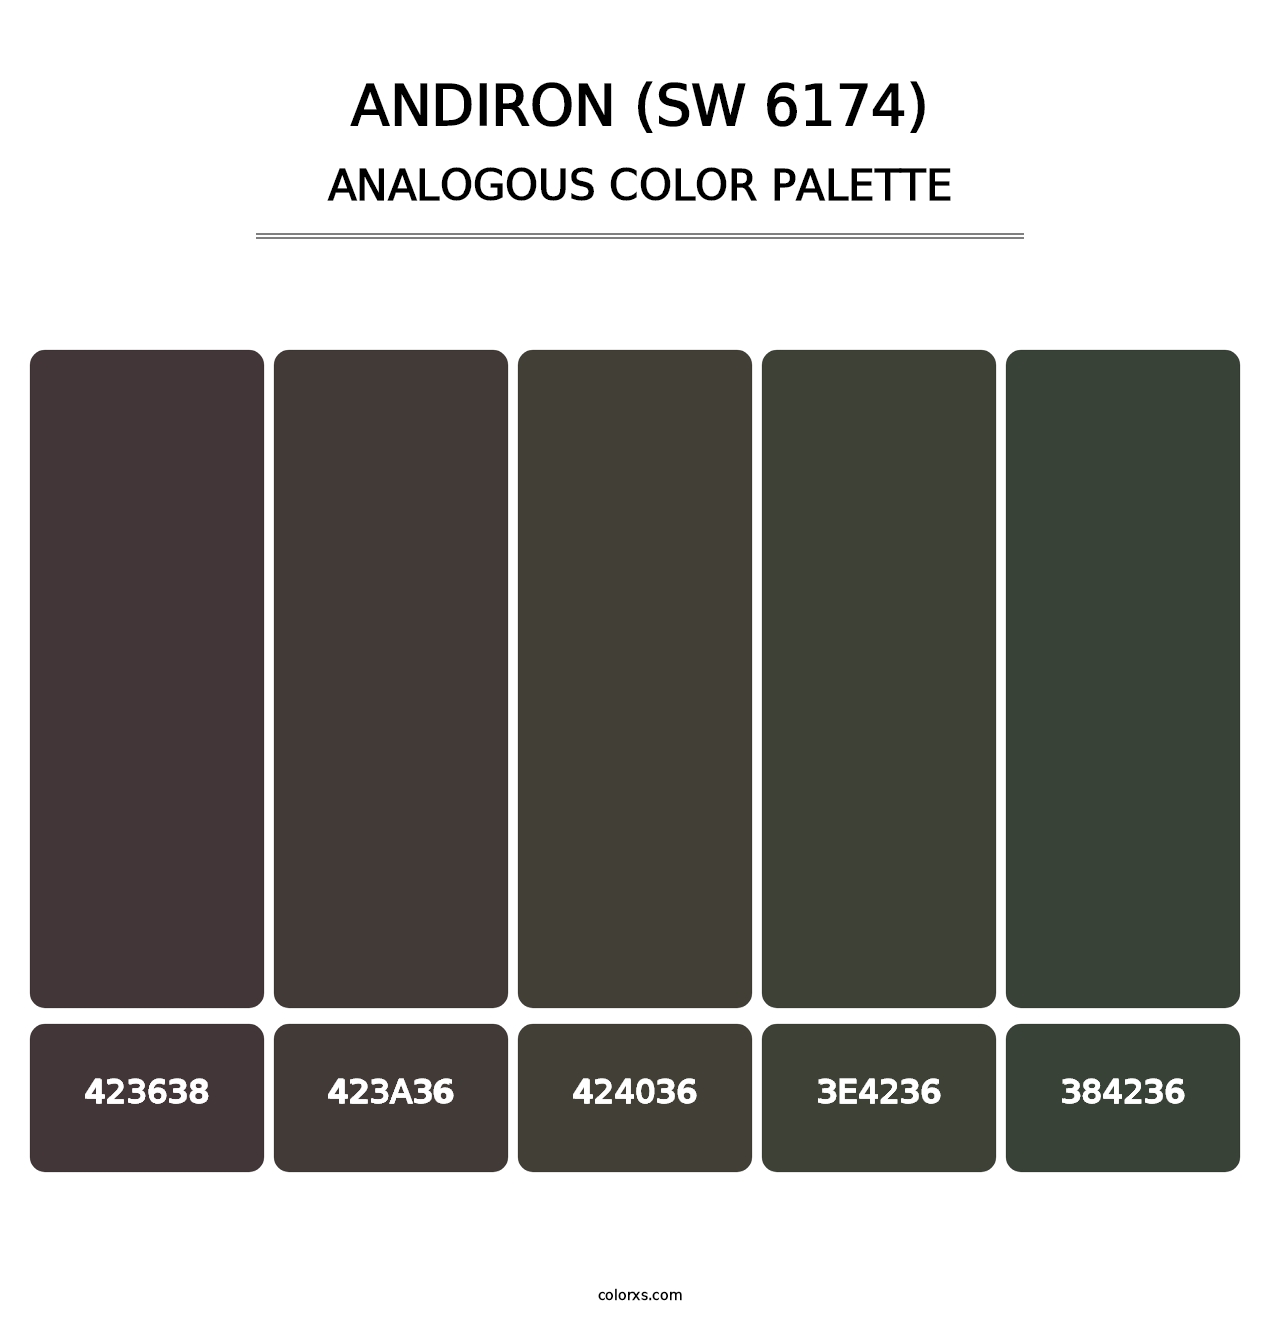 Andiron (SW 6174) - Analogous Color Palette